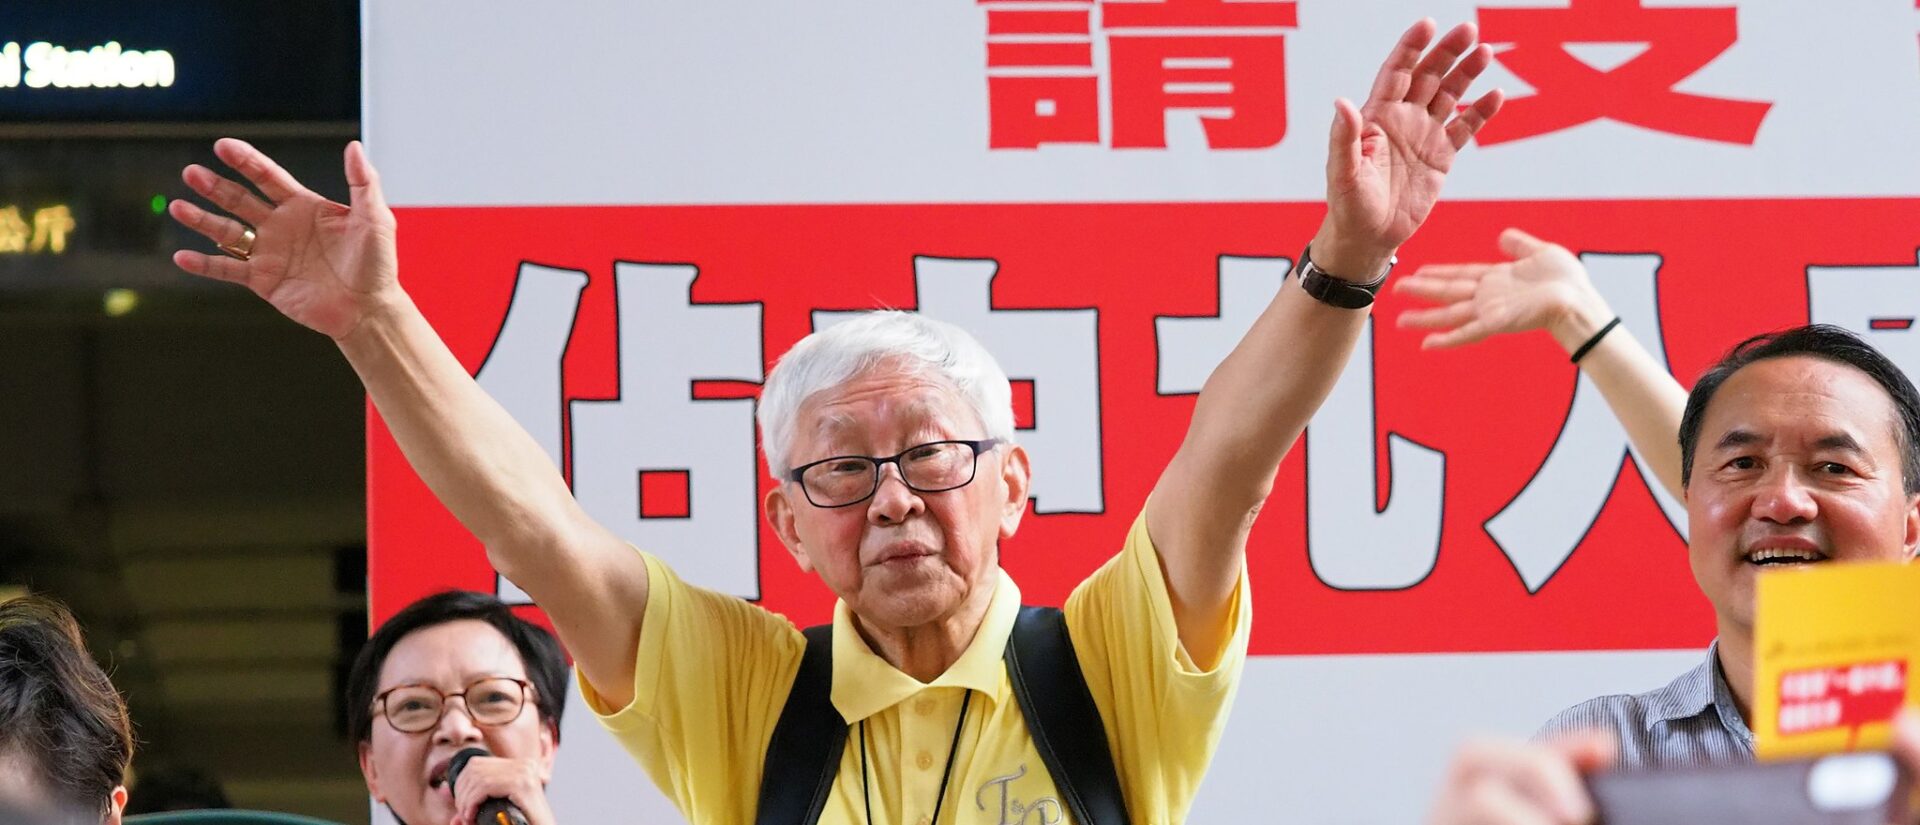 Le cardinal Zen milite depuis longtemps pour la démocratie à Hong Kong | © Etan Liam/Flickr/CC BY-ND 2.0